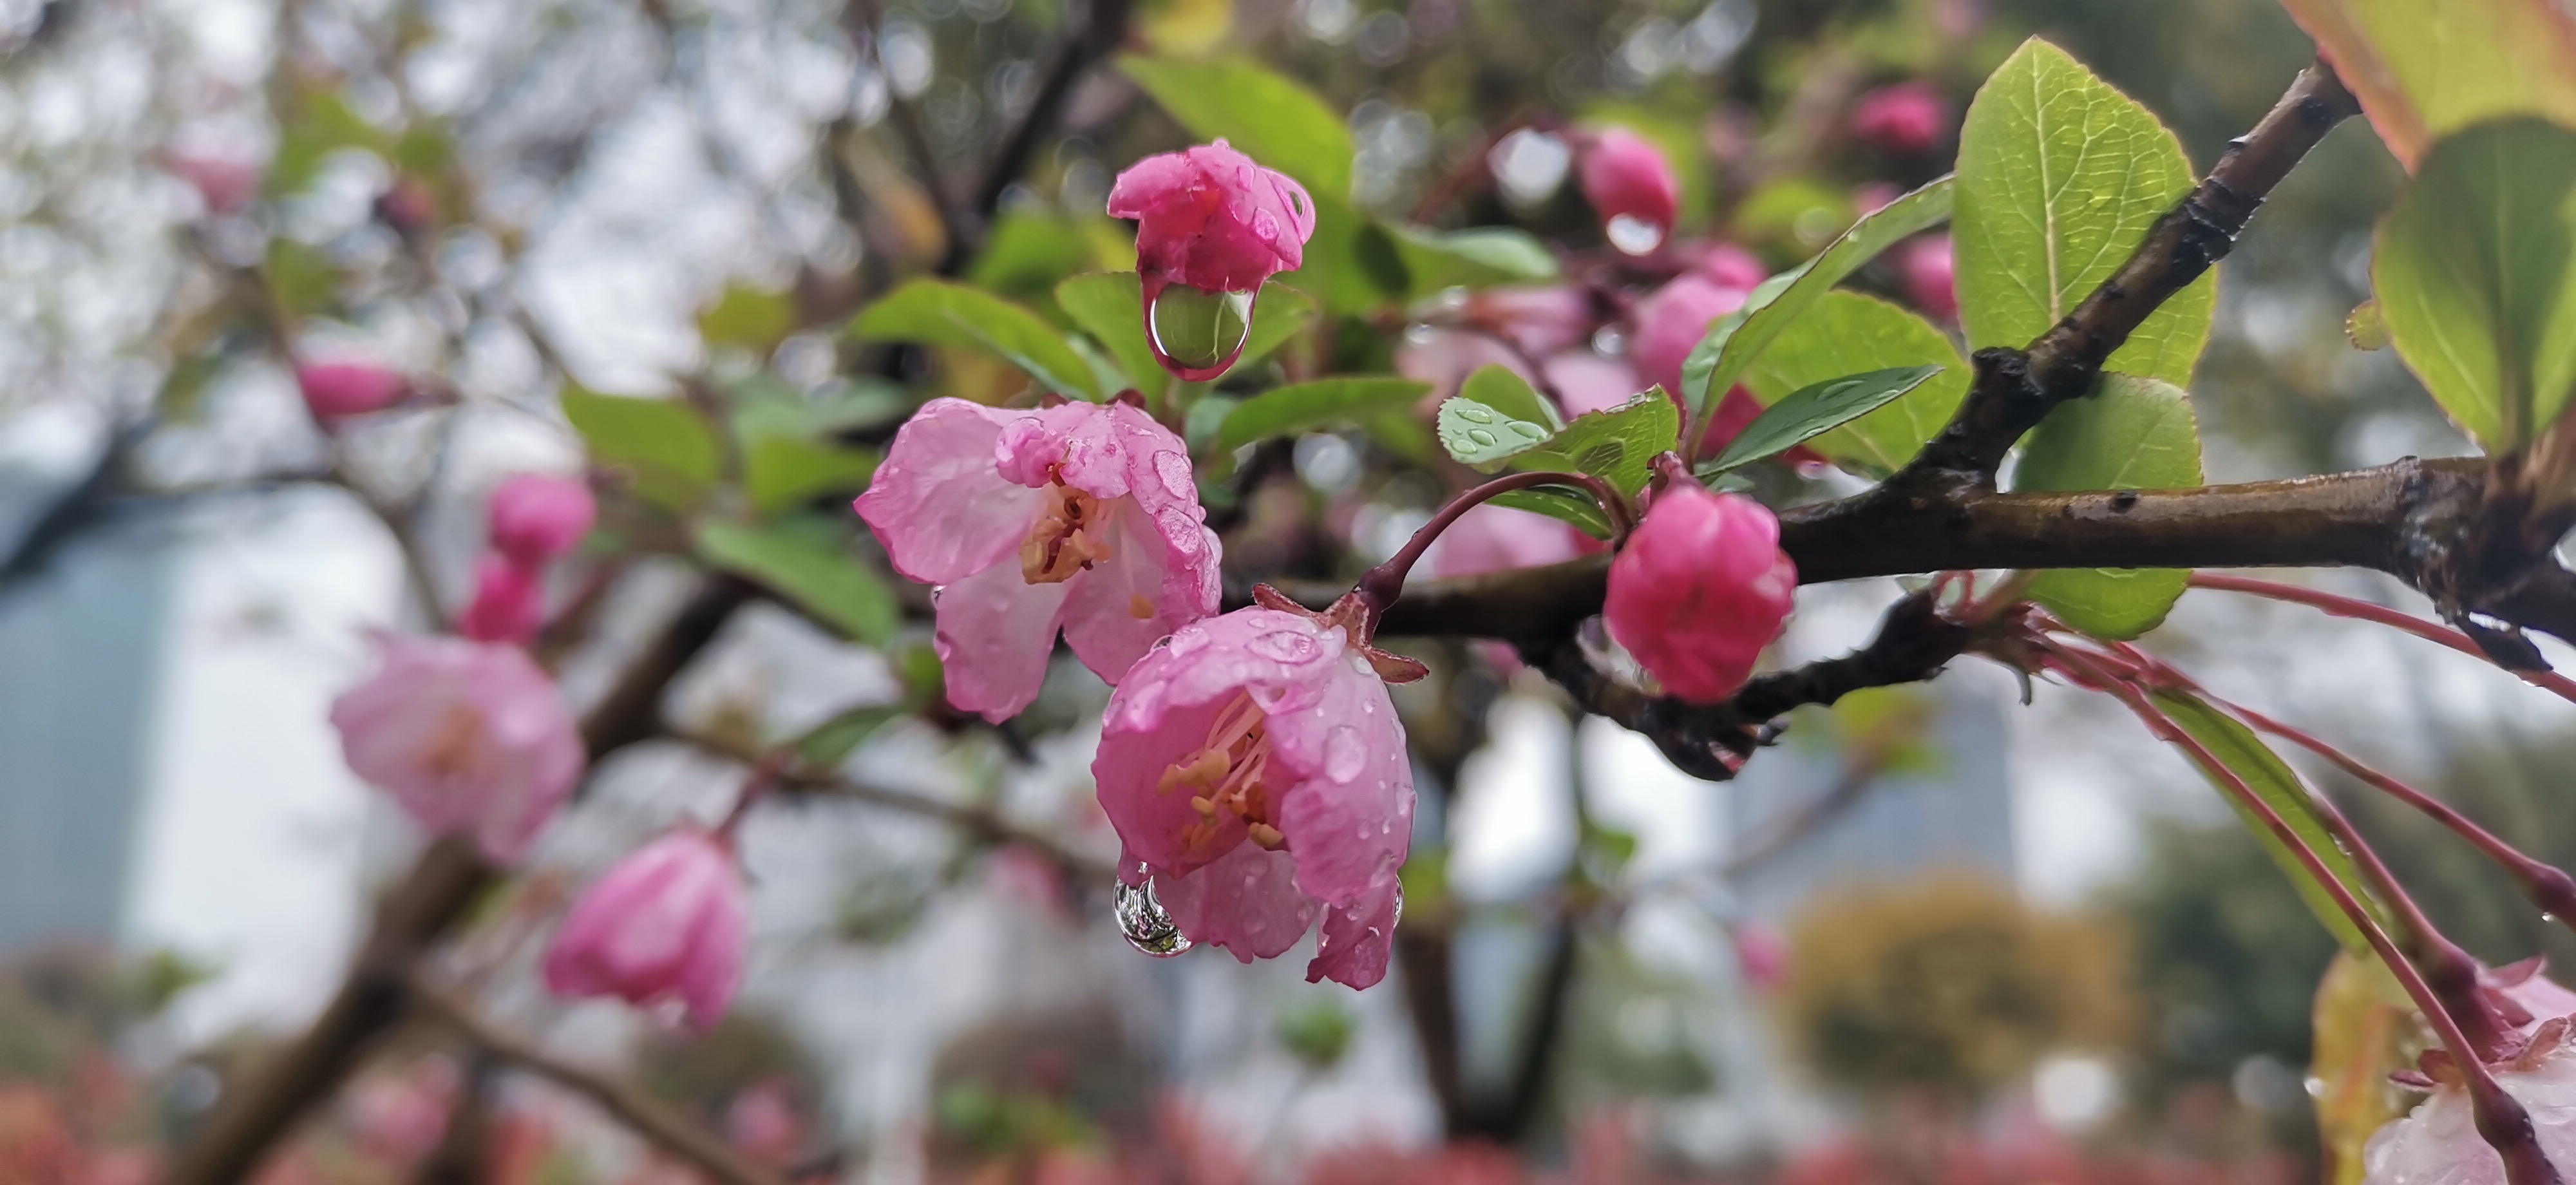 雨后的海棠花风情万种,特别是花瓣中带着那晶莹剔透的水珠,更加娇媚